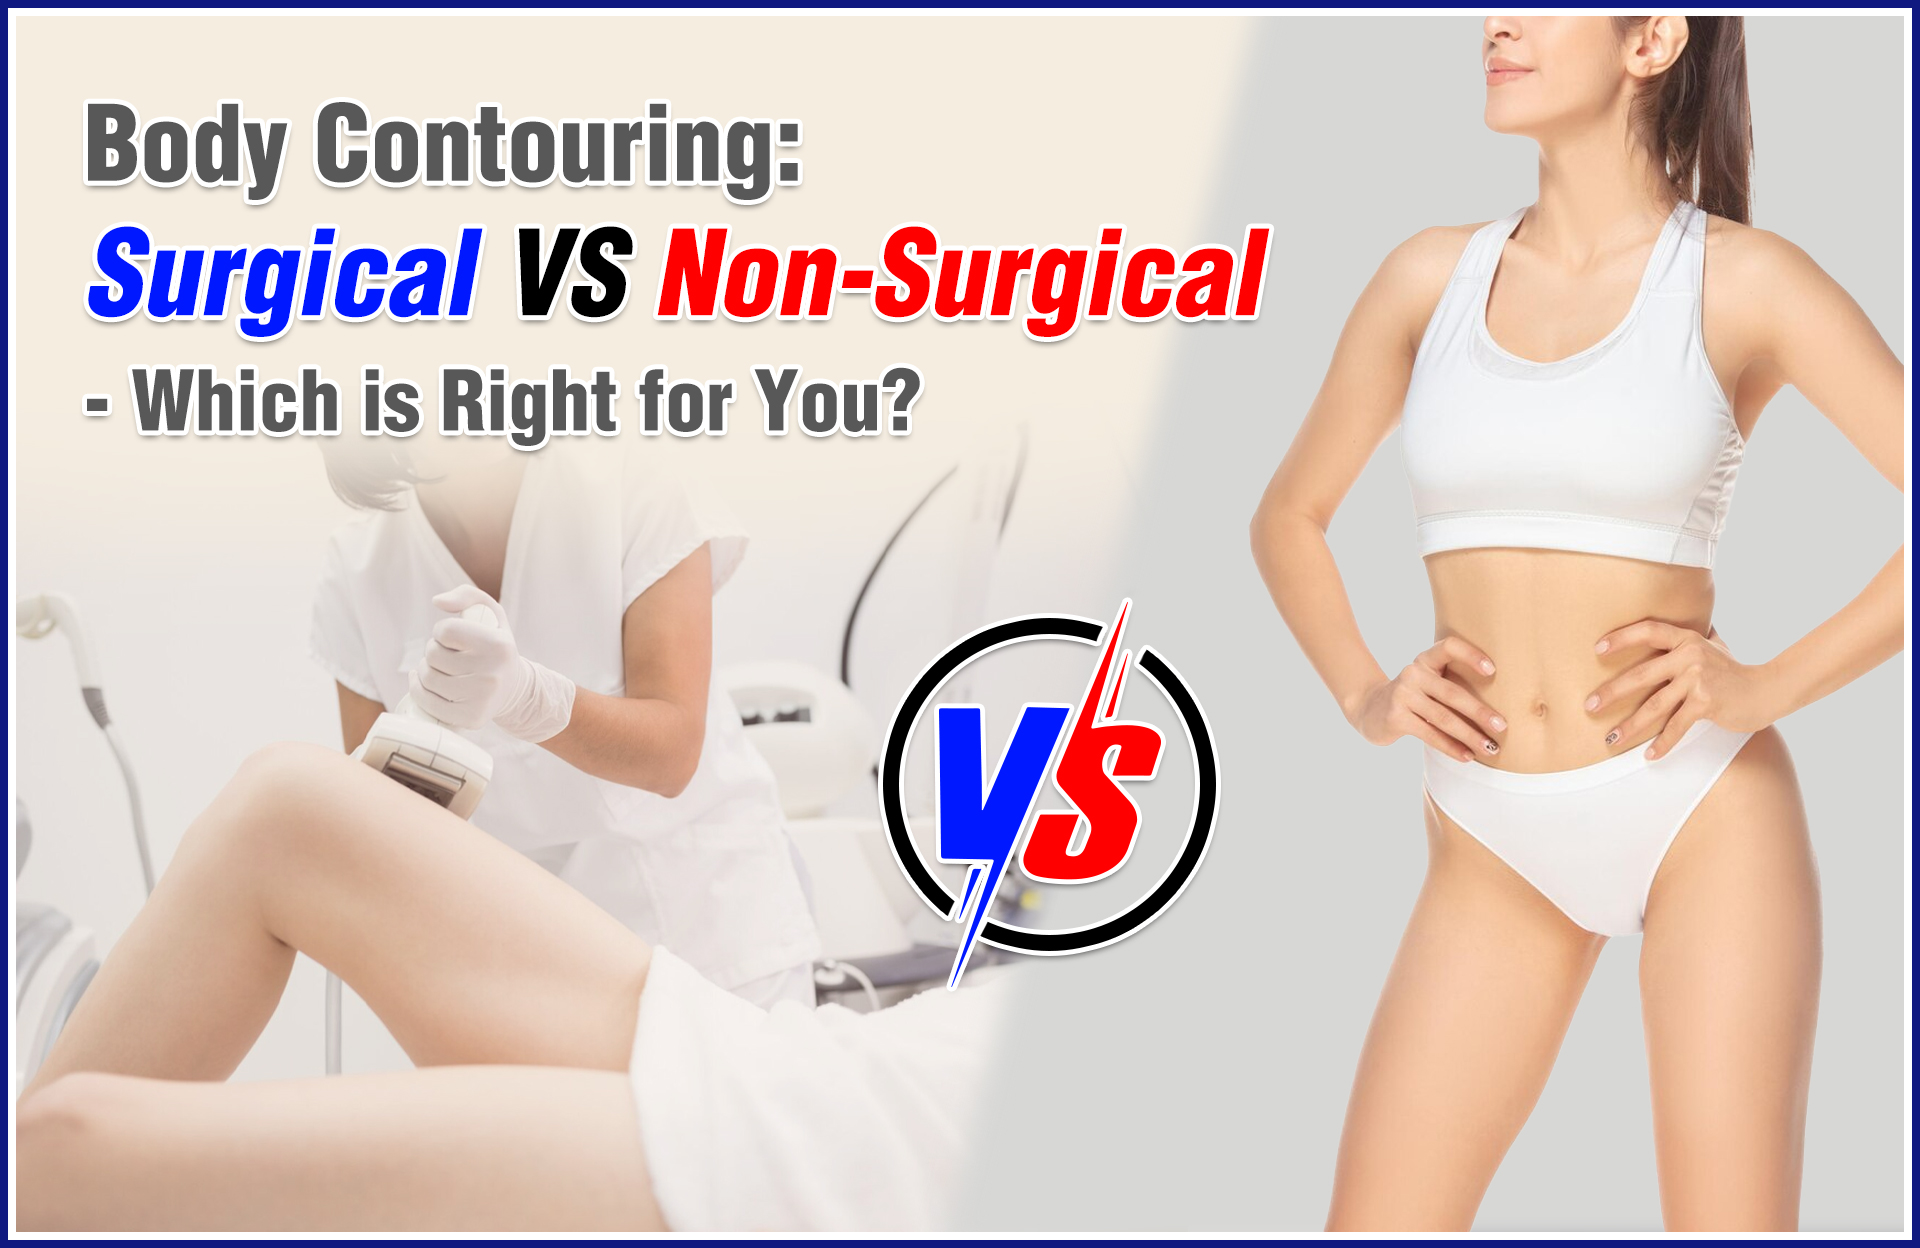 surgical vs non-surgical body contouring